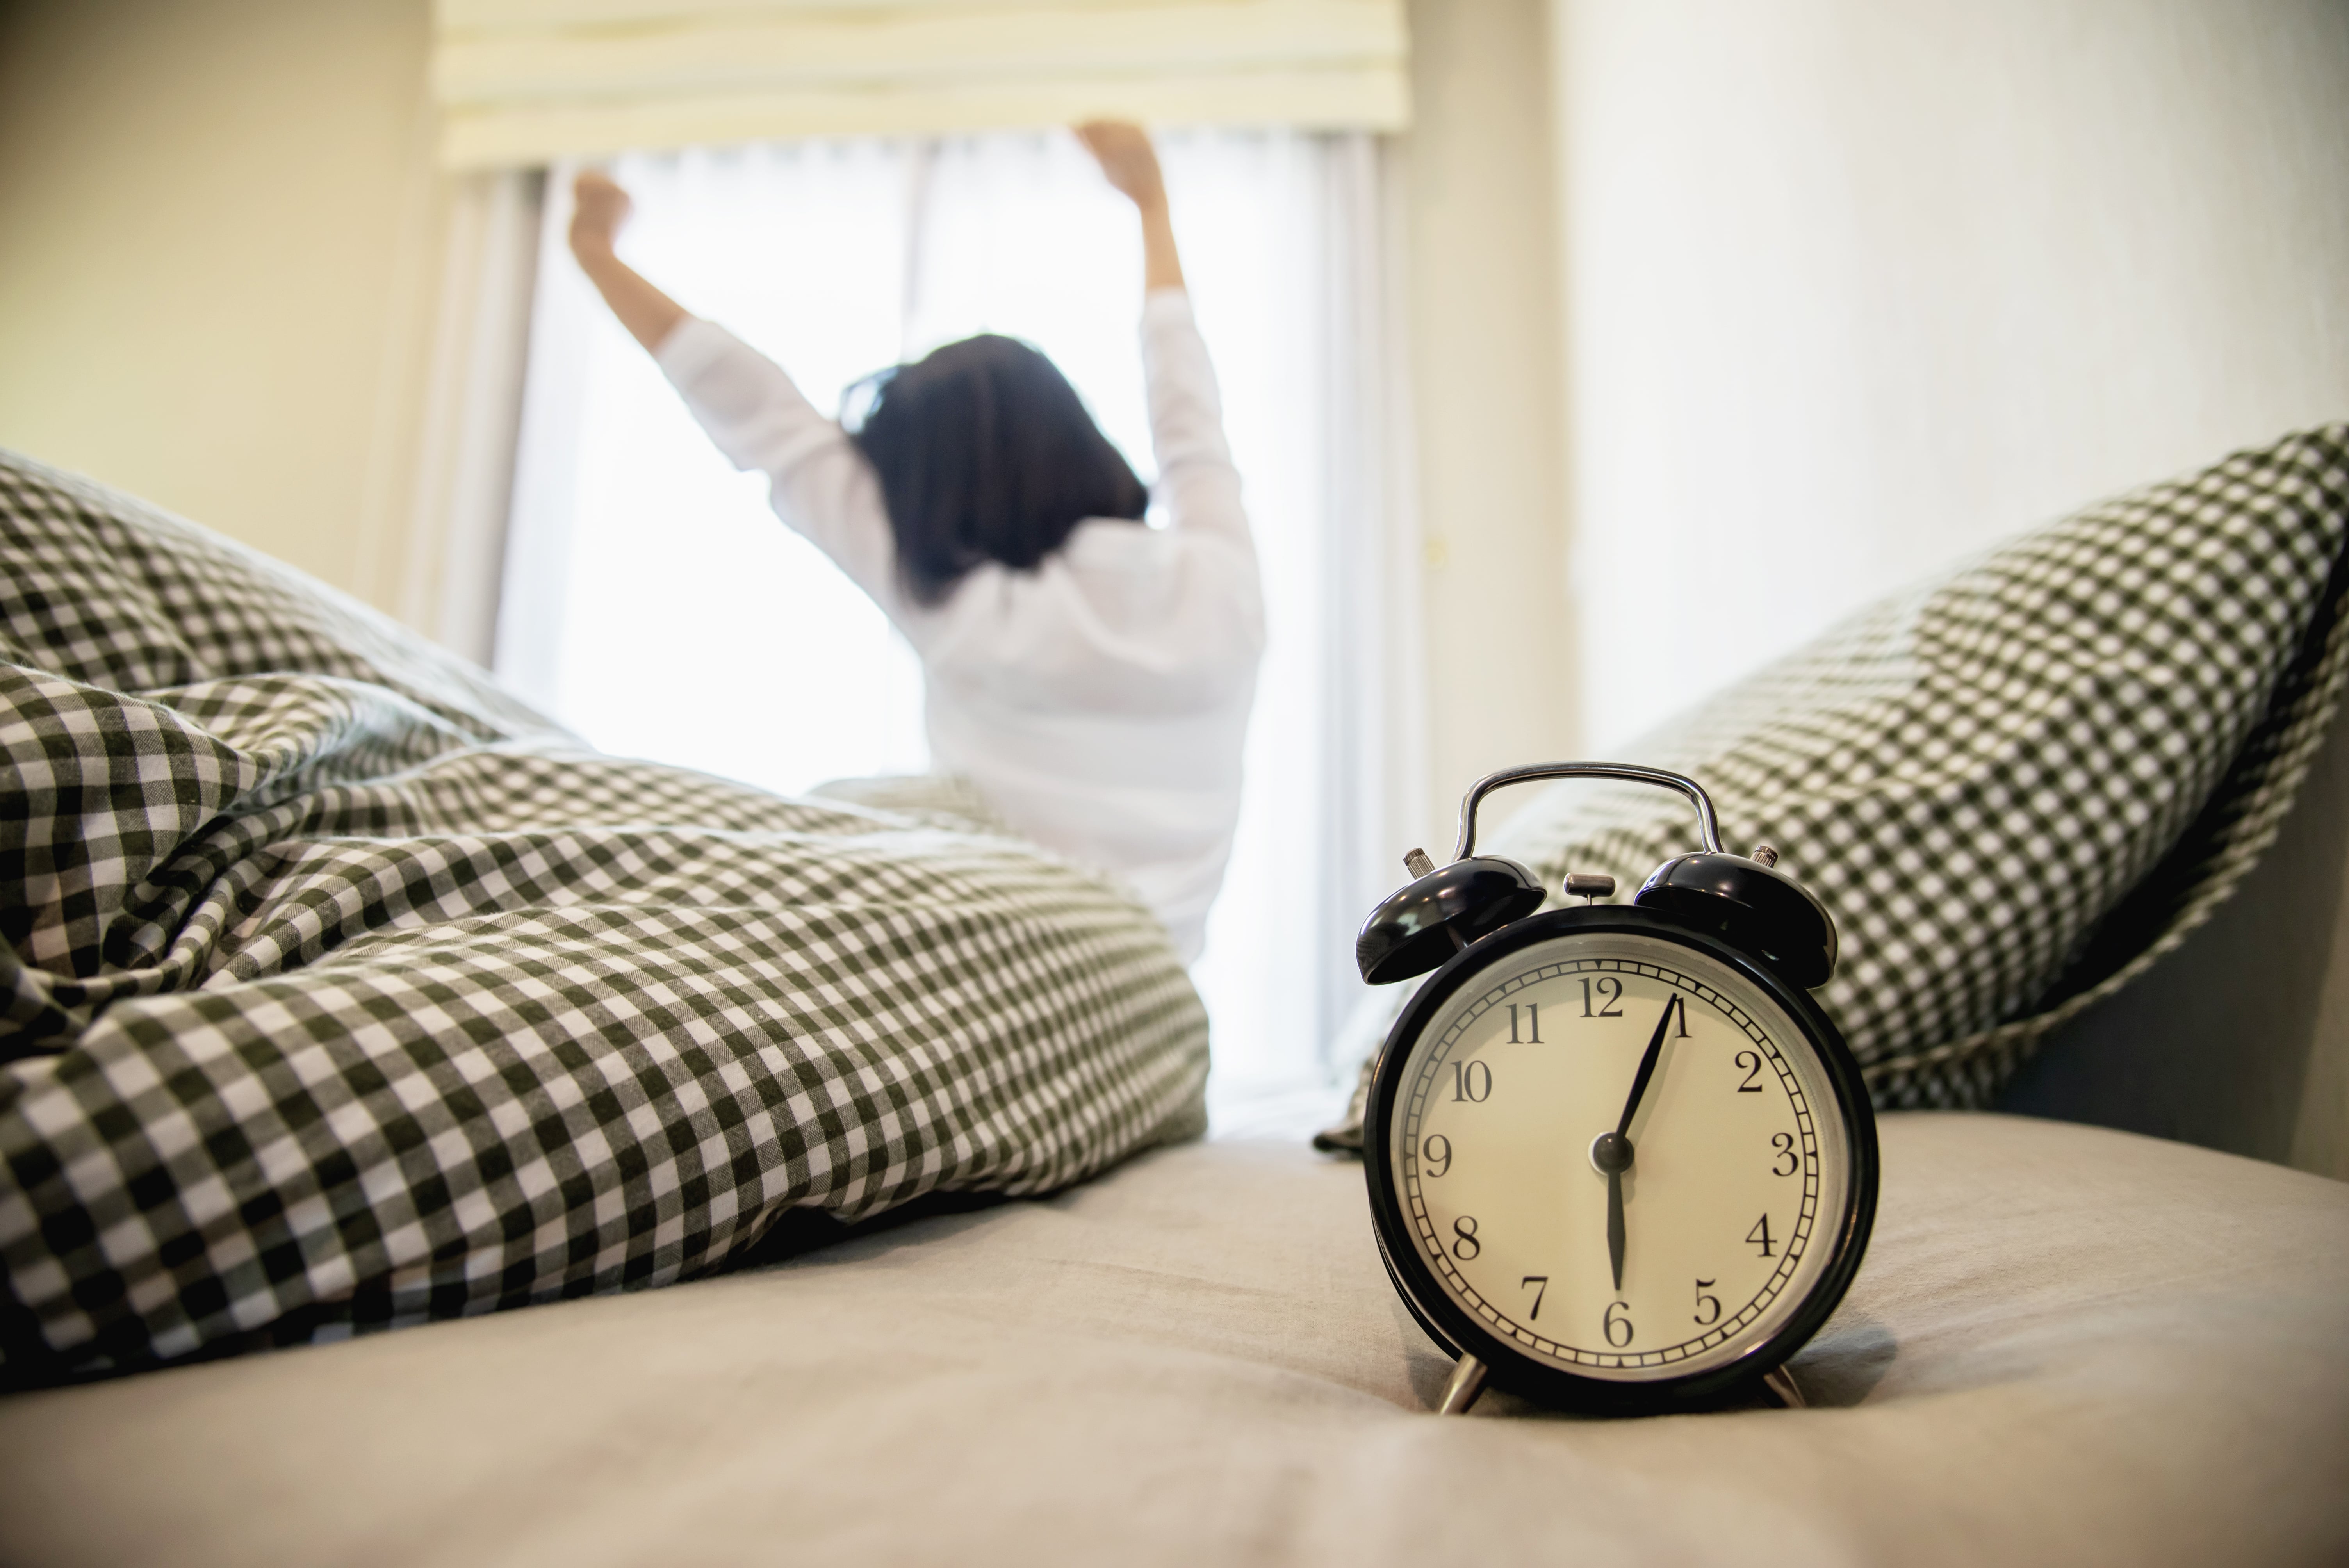 Mengenal Kronotipe, Cara Tentukan Produktivitas Berdasarkan Waktu Tidur